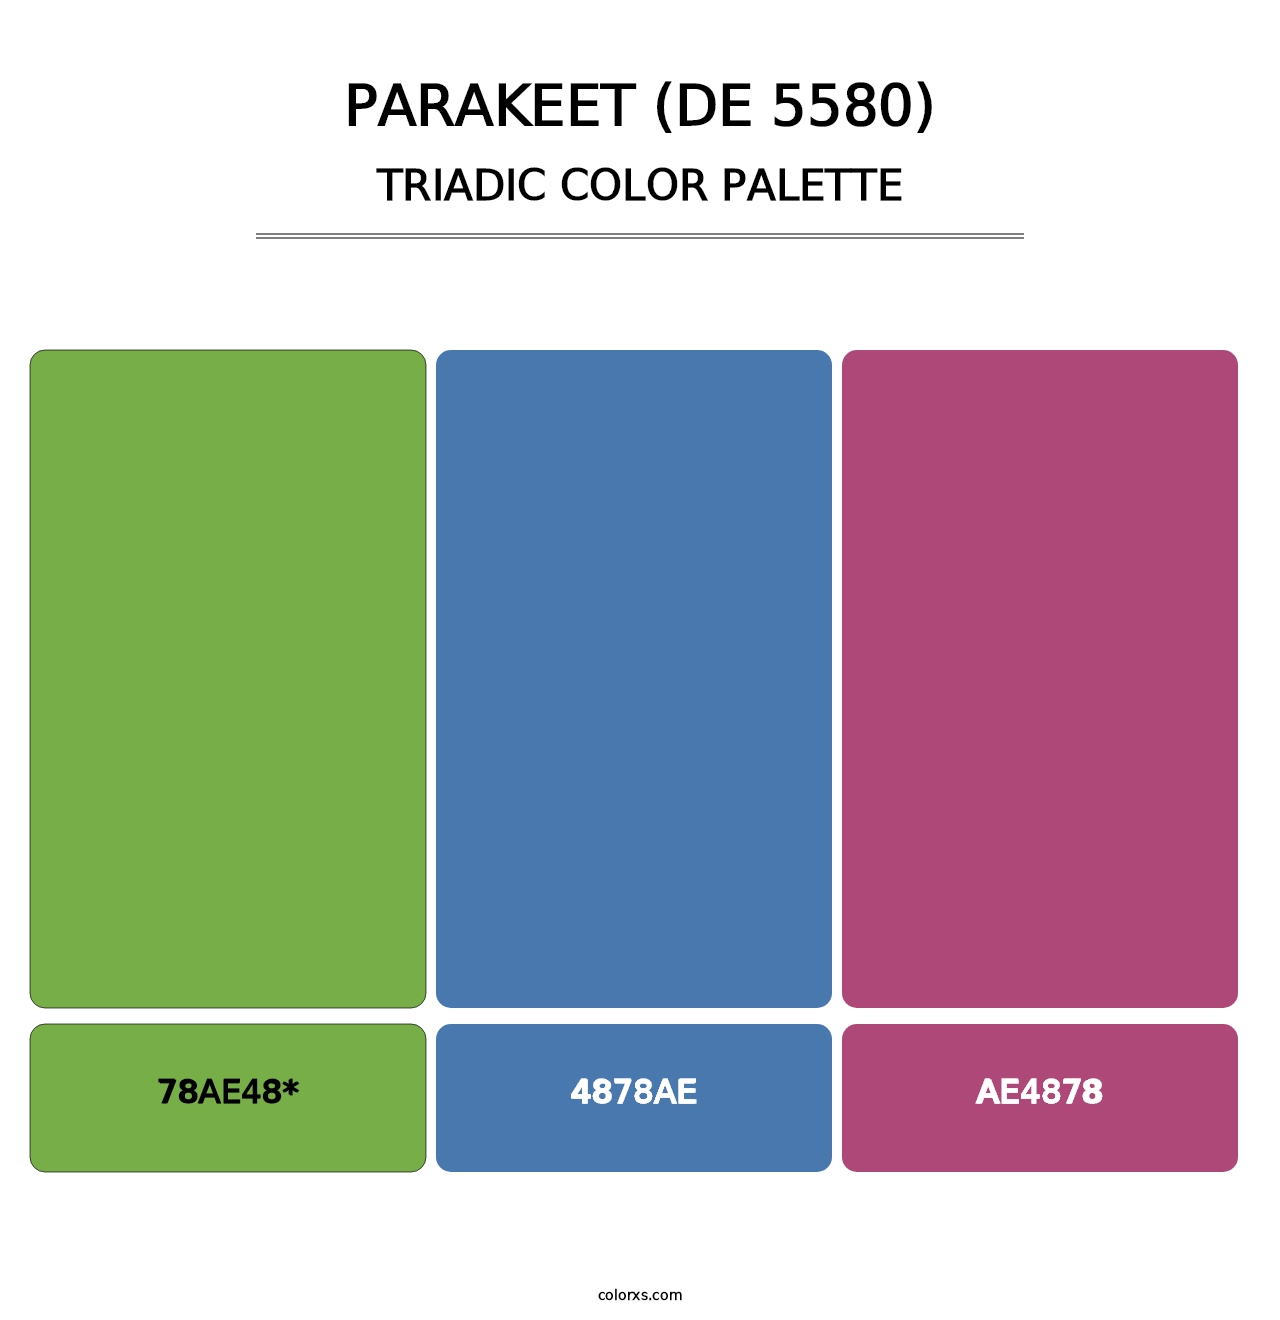 Parakeet (DE 5580) - Triadic Color Palette